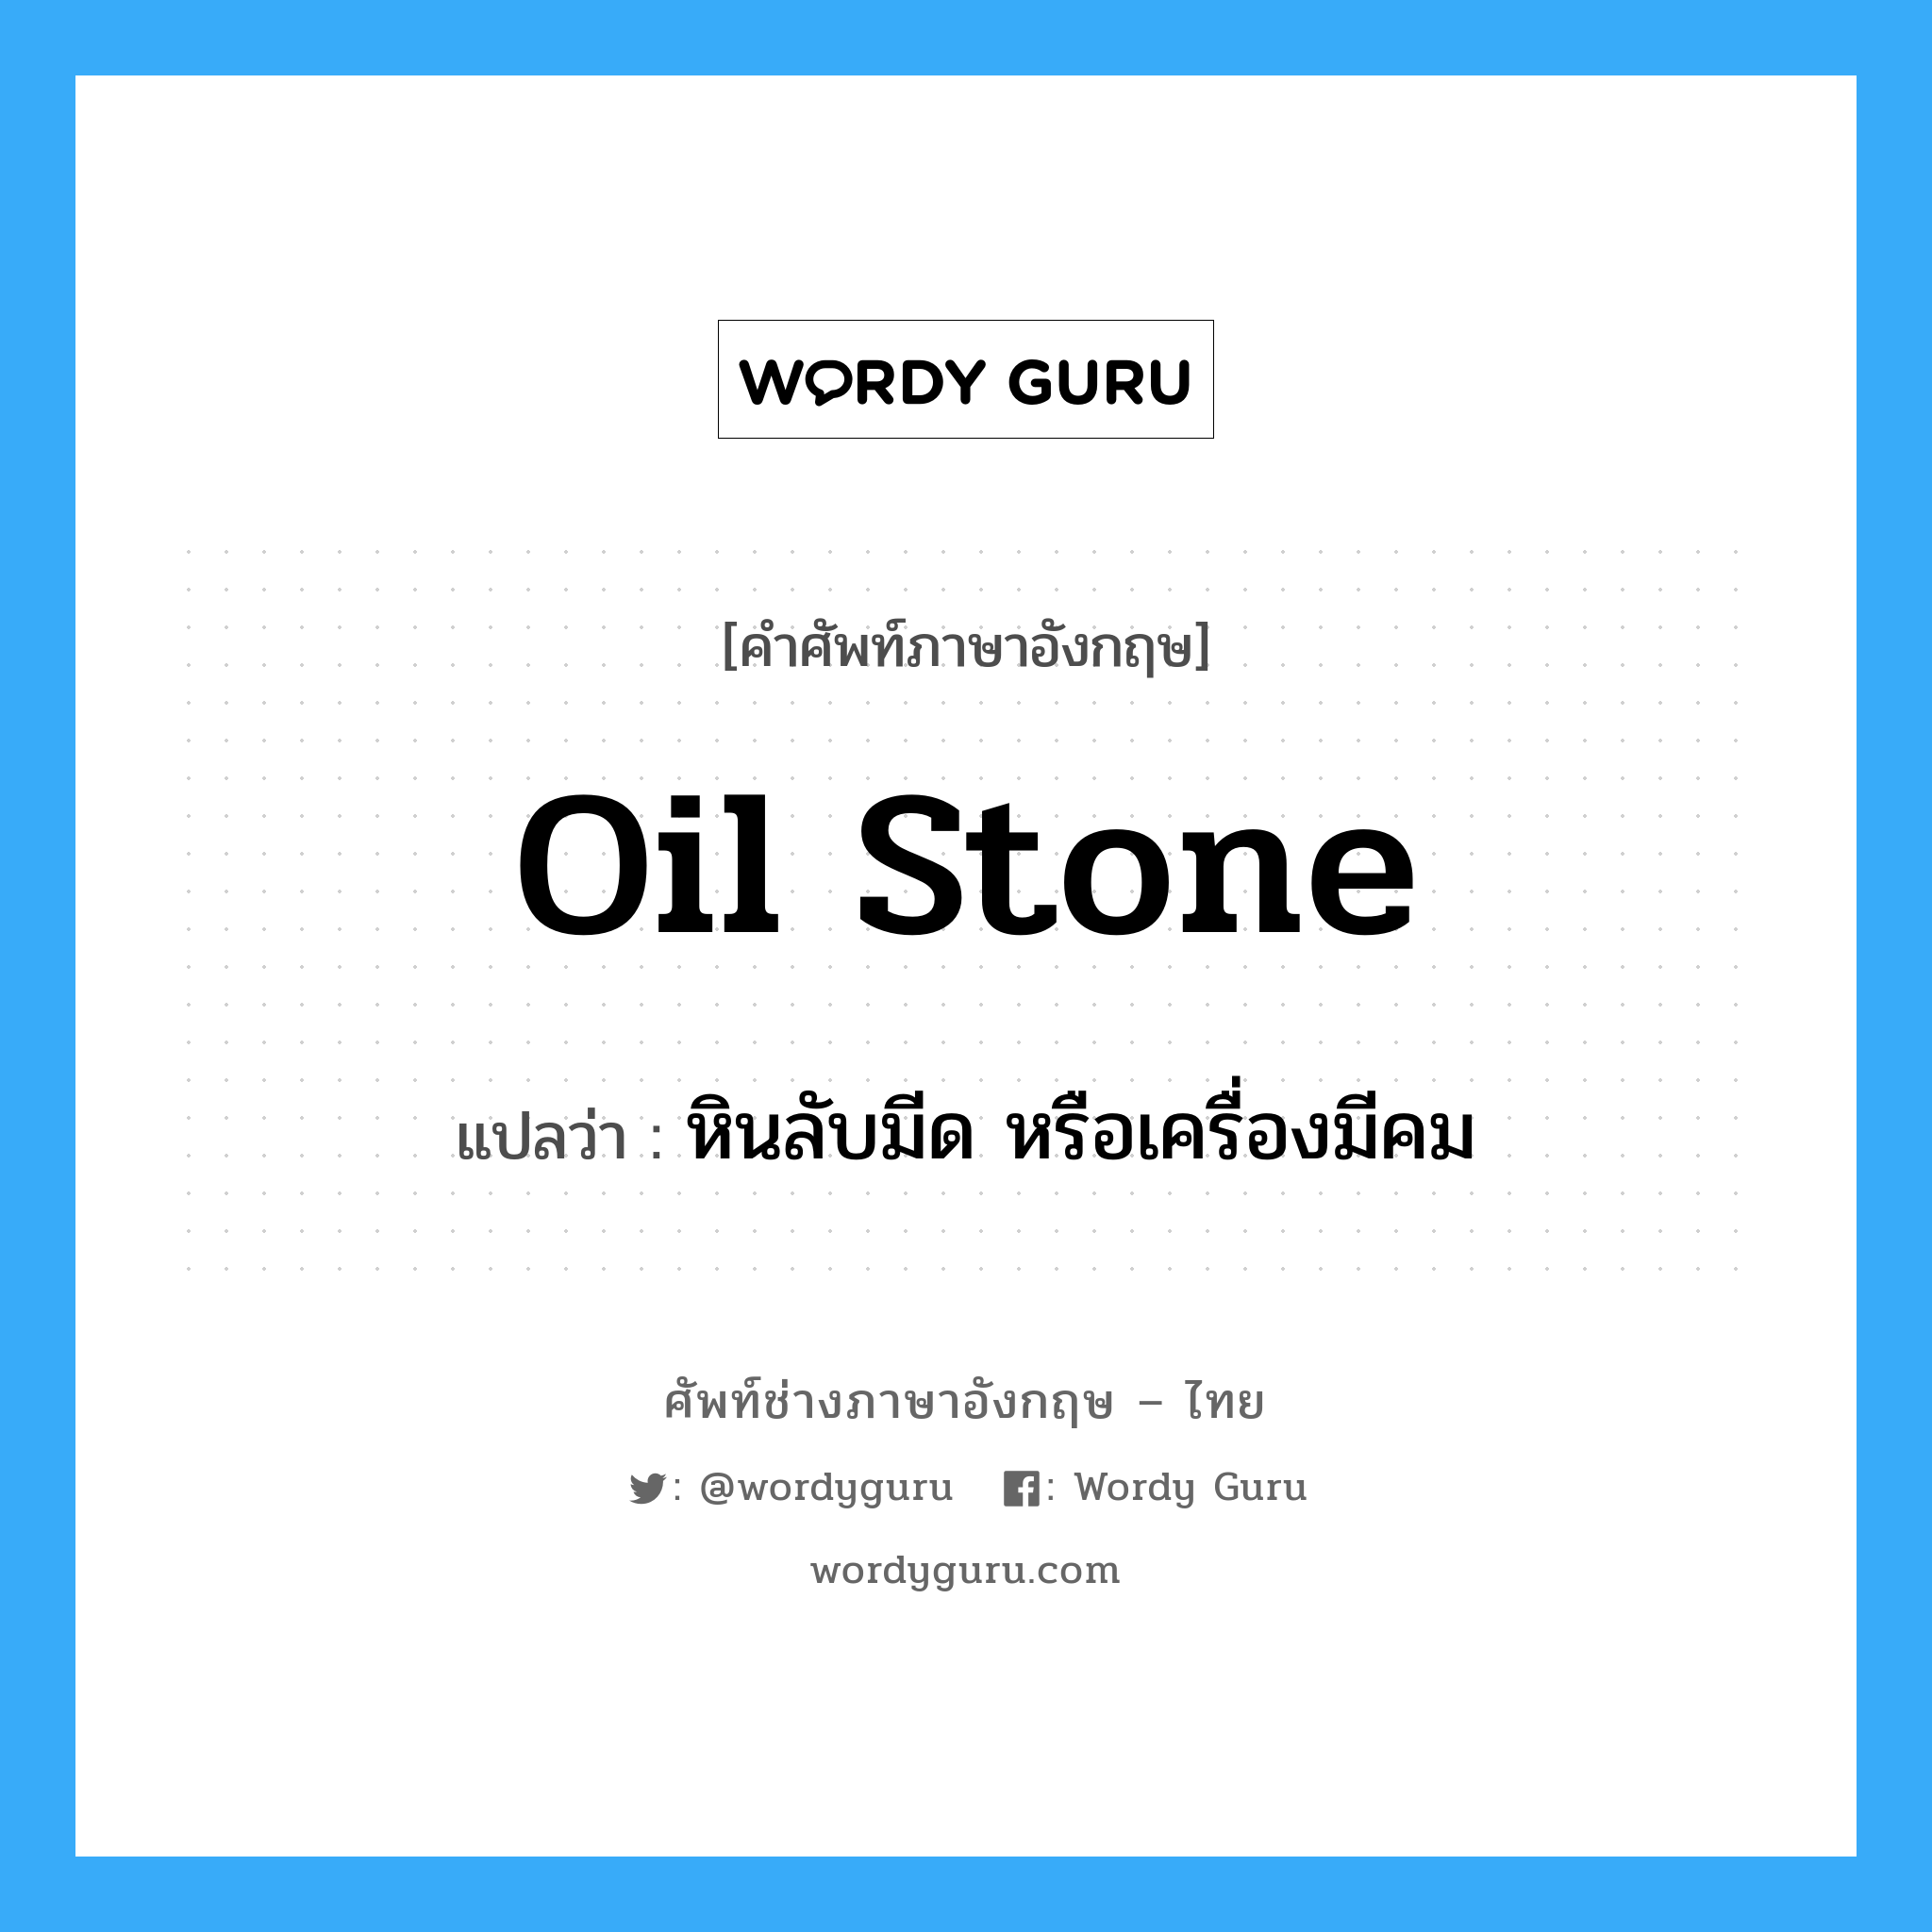 oil stone แปลว่า?, คำศัพท์ช่างภาษาอังกฤษ - ไทย oil stone คำศัพท์ภาษาอังกฤษ oil stone แปลว่า หินลับมีด หรือเครื่องมีคม